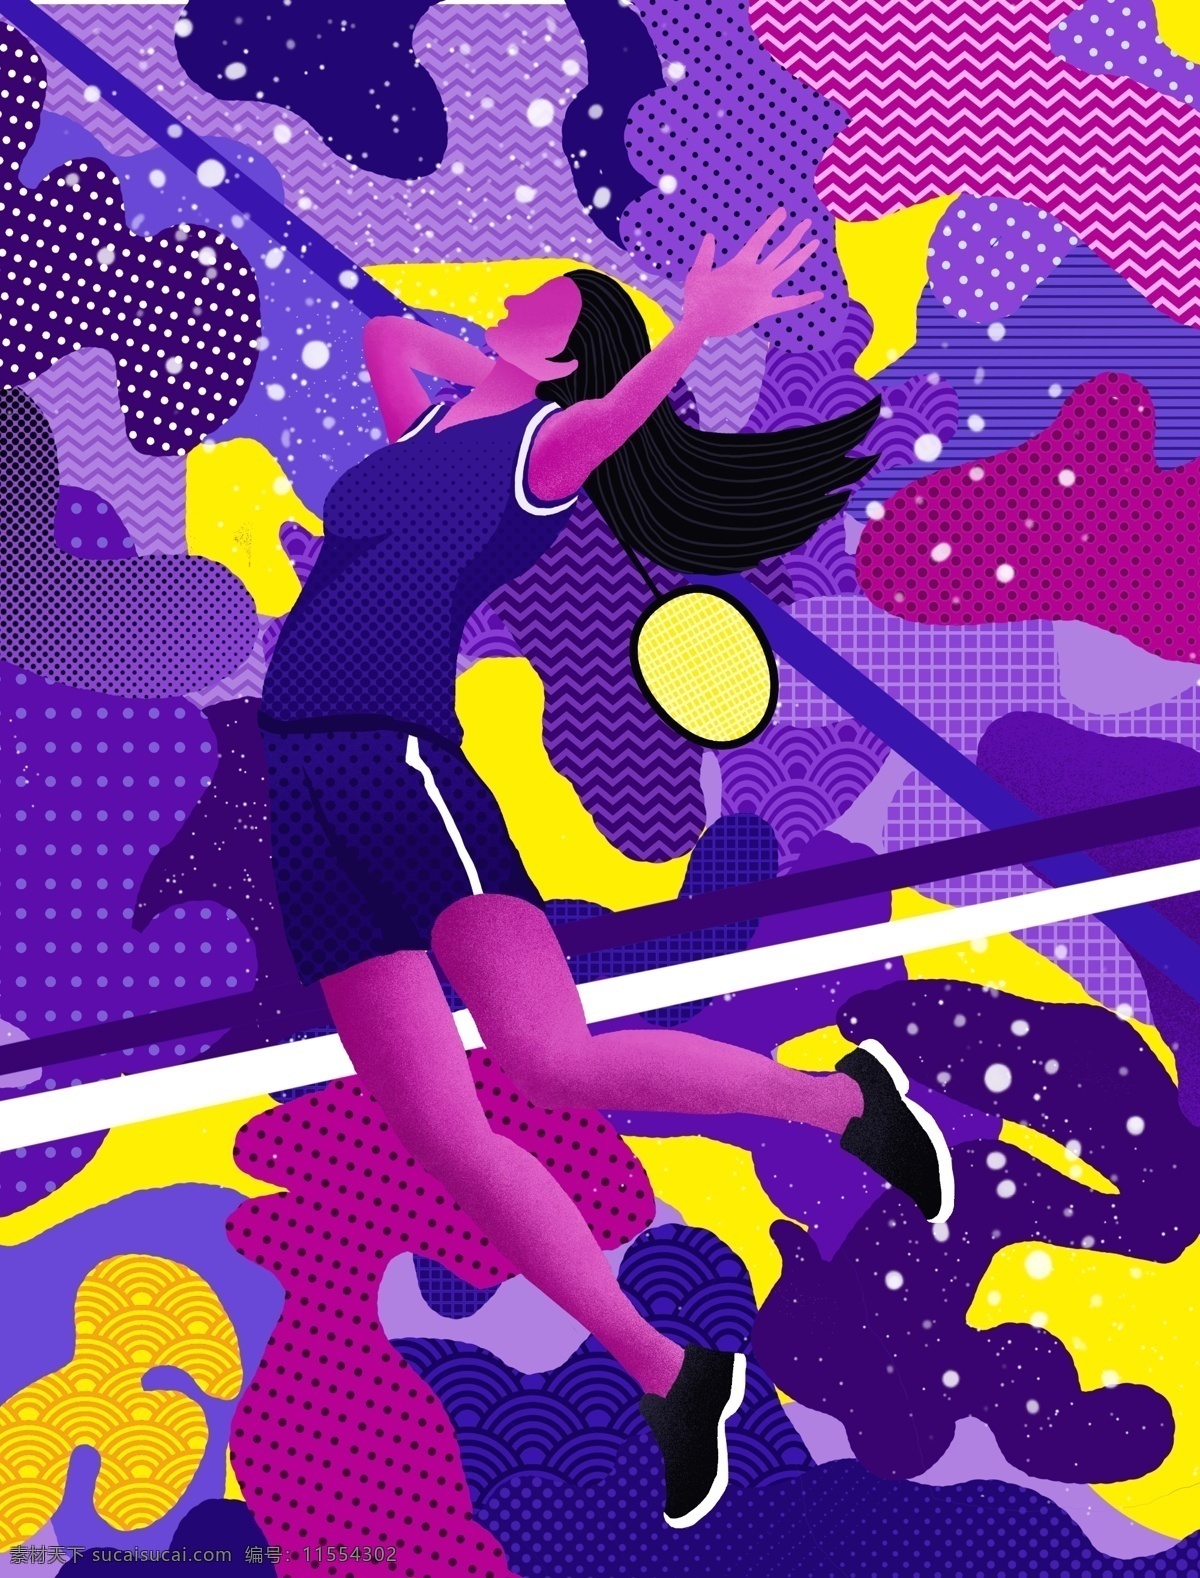 游走 梦 运动 系 网球 少女 抽象 插画 运动少女 打网球 抽象插画 抽象图像 壁纸 游走的梦 运动系插画 手机用图